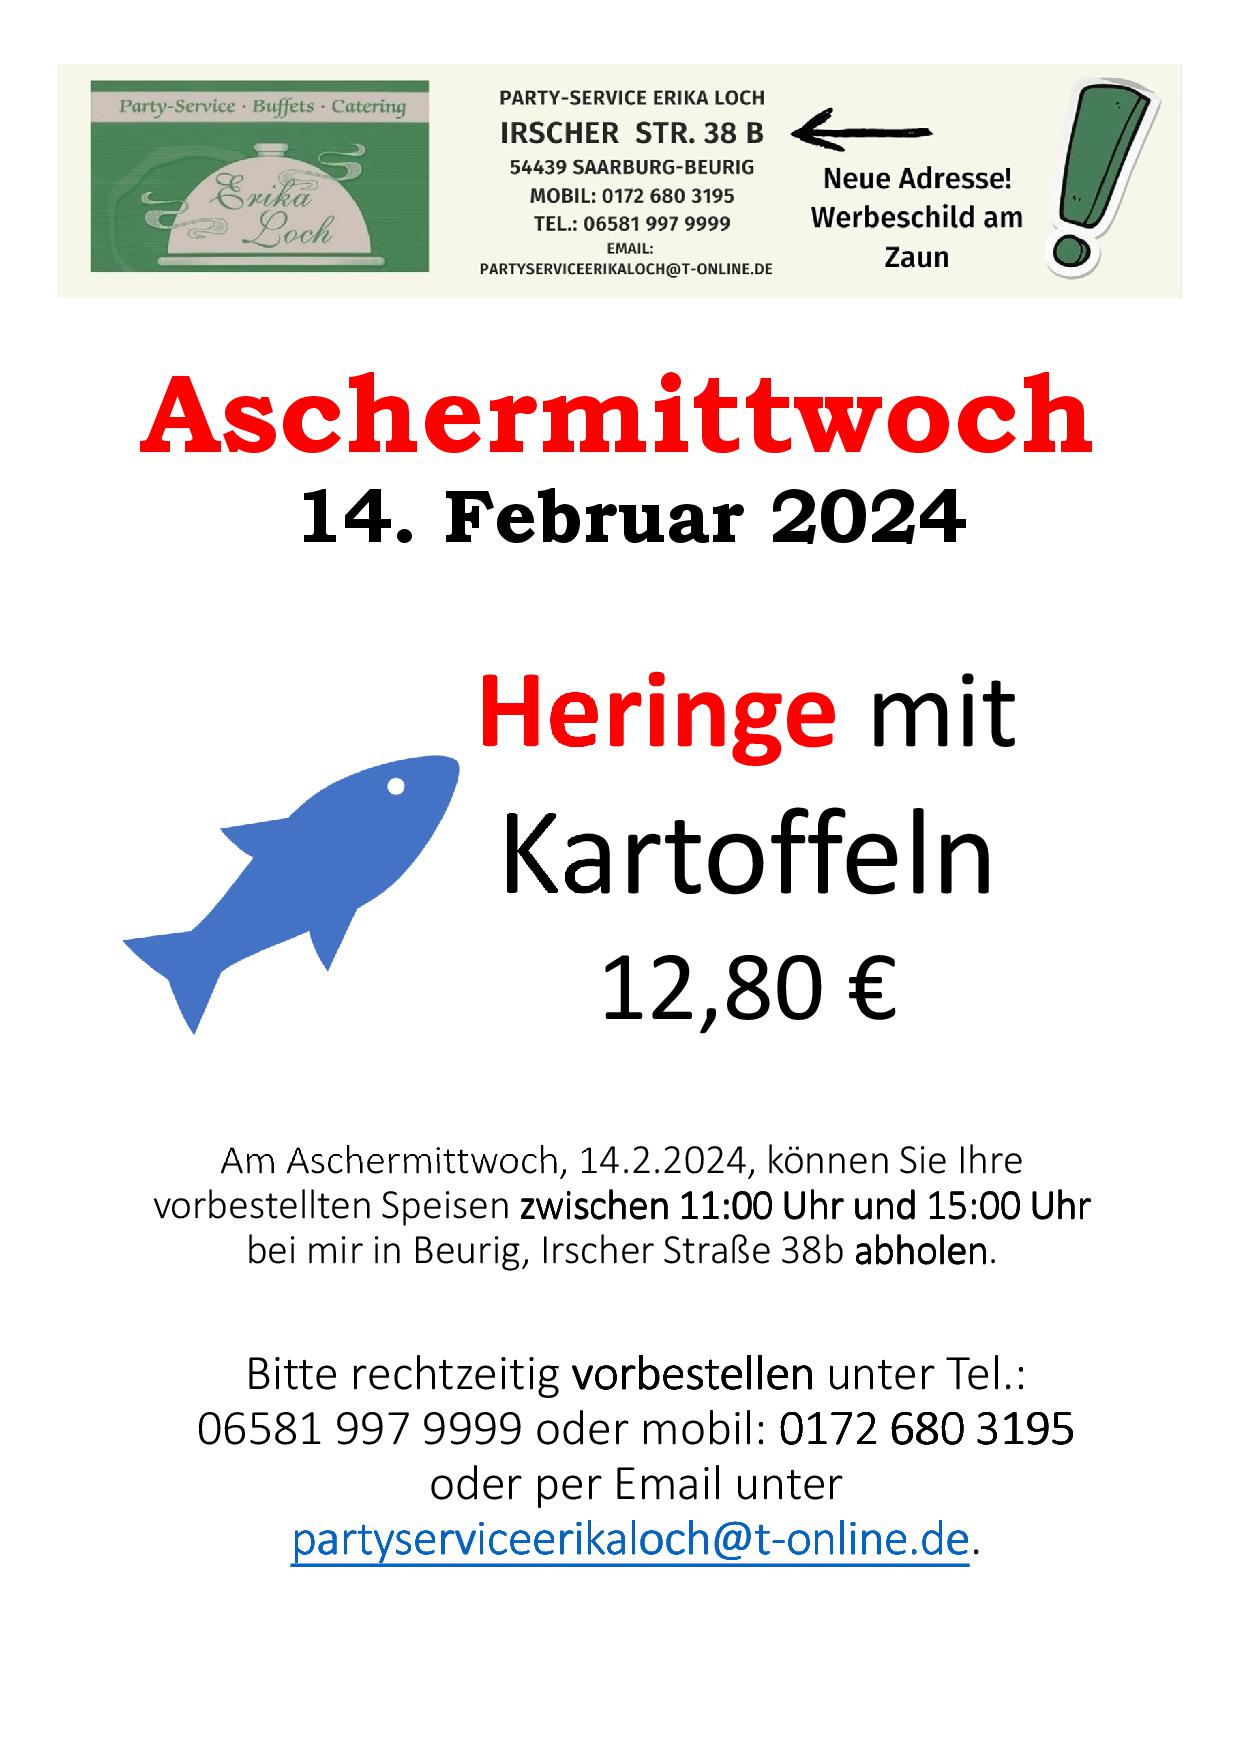 Aschermittwoch_20240214a